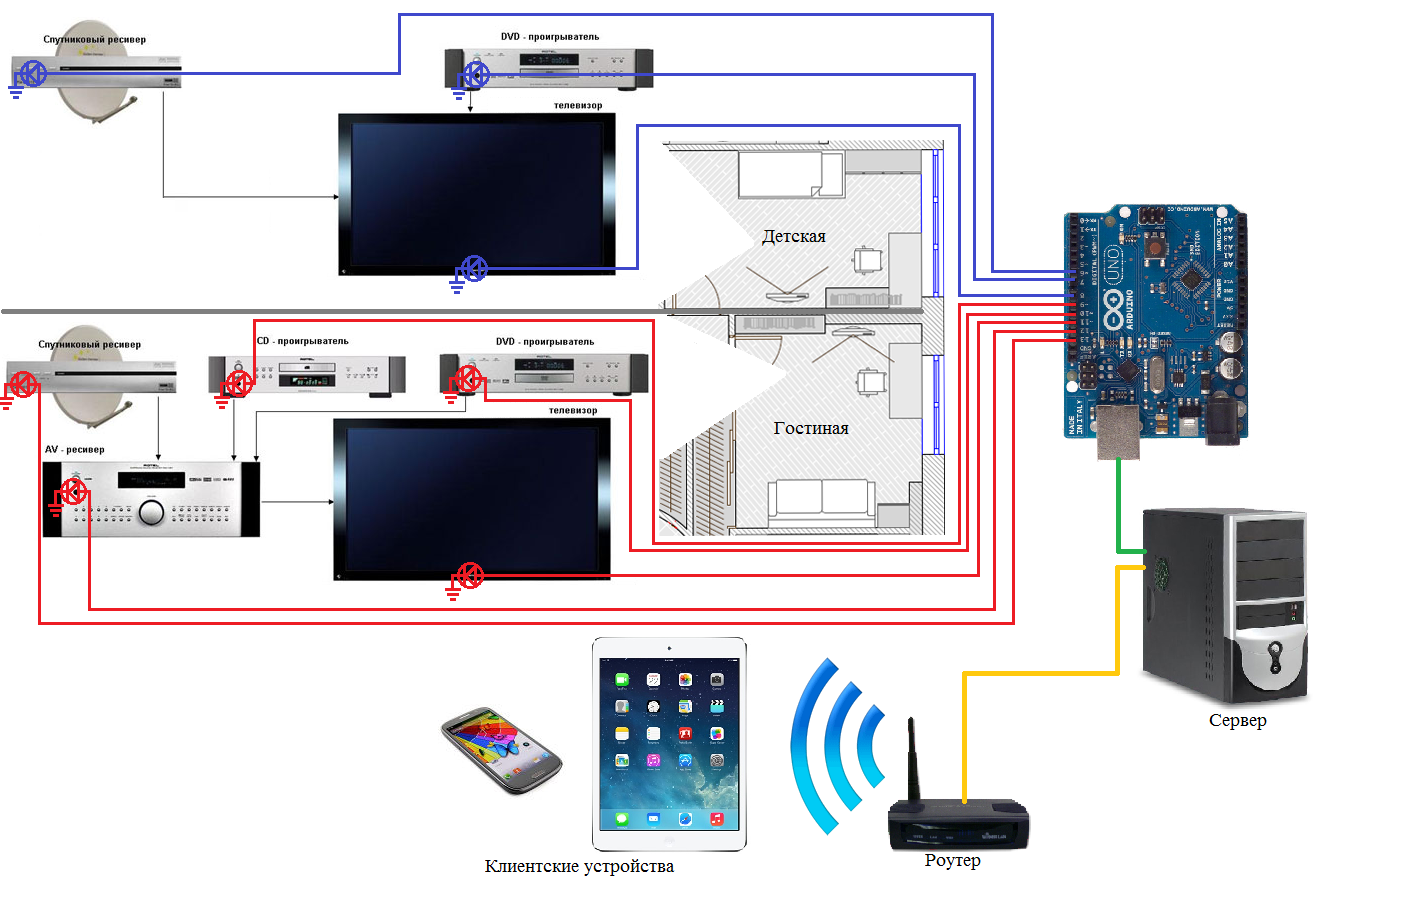 Команда Control4 представила пульт Neeo, управляющий системами на базе технологии компании Новинка использует для работы Wi-Fi-подключение, на борту у нее яркий сенсорный IPS-экран разрешением 480х800 пикселей с диагональю 81 мм 3,2 дюйма, а также с ультр